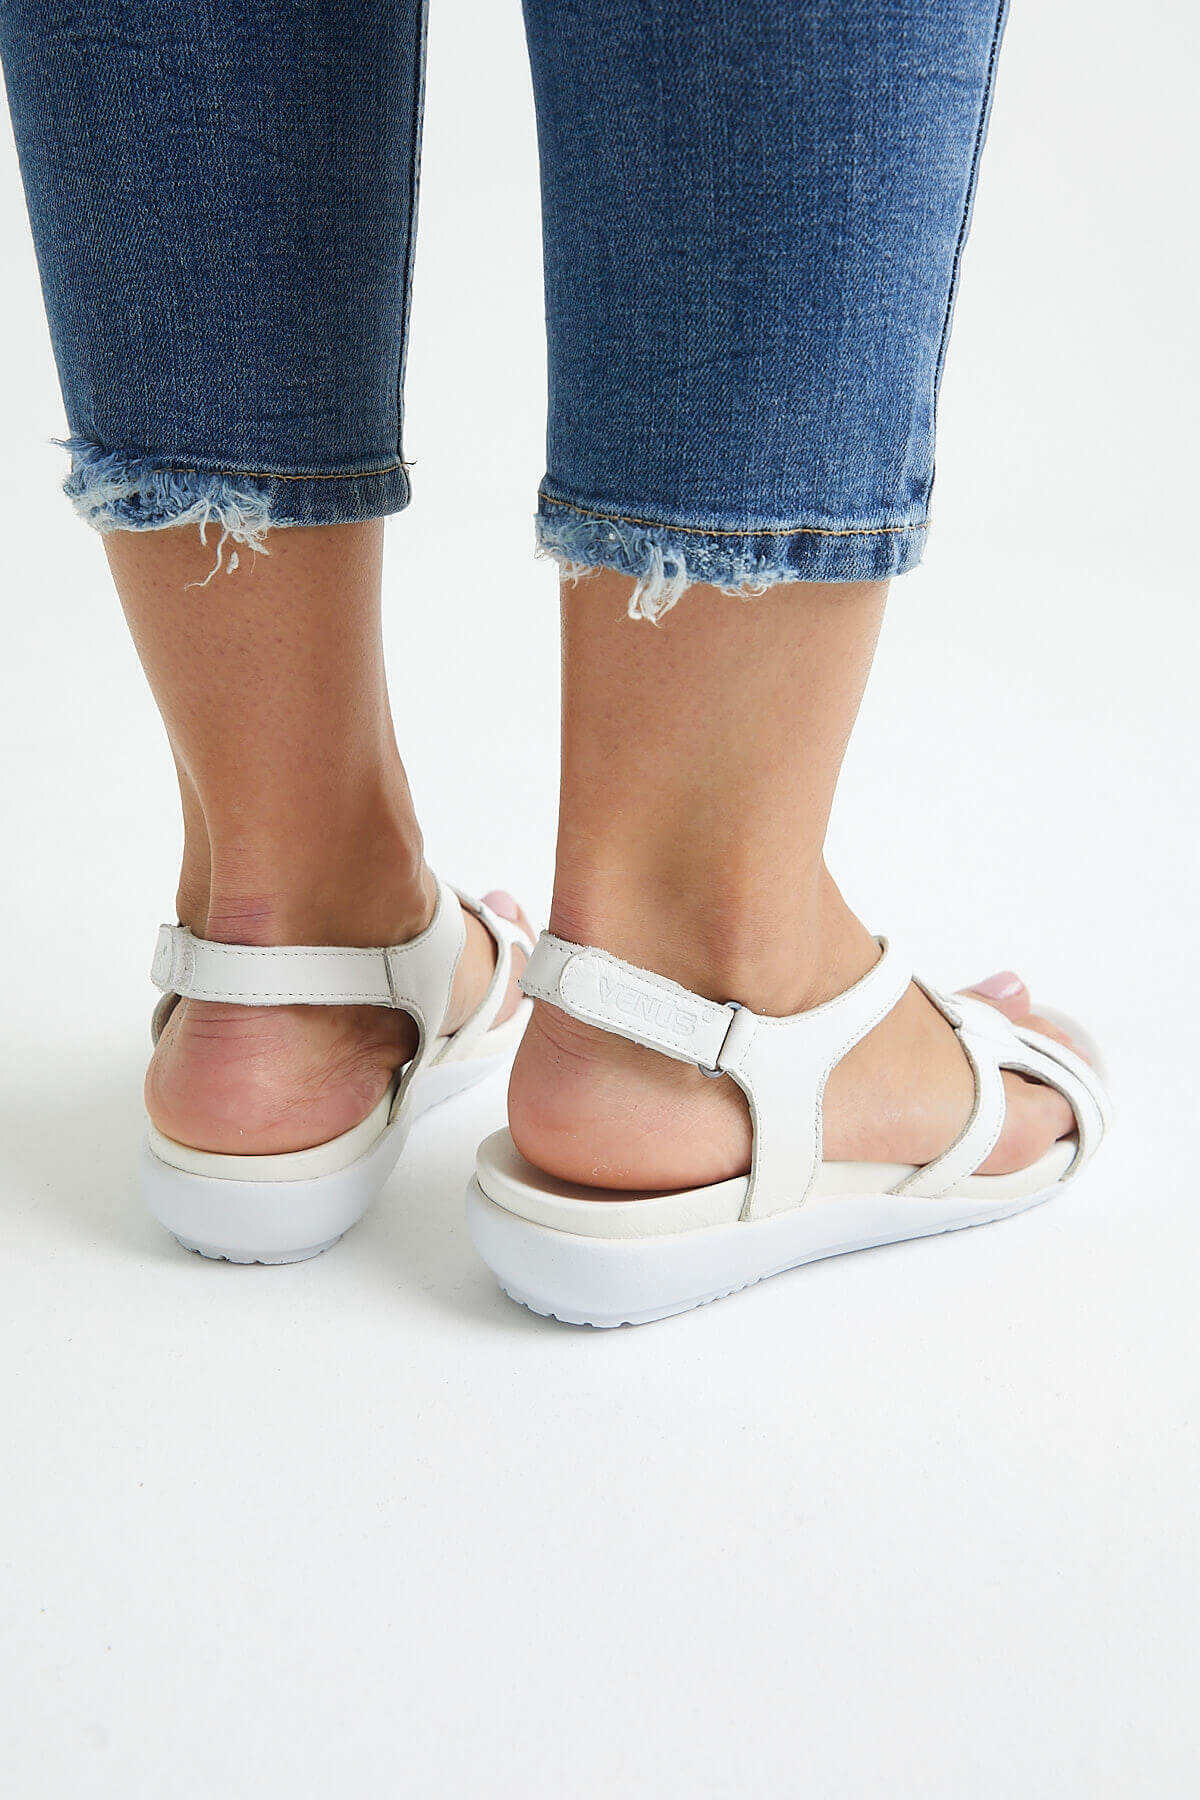 Kadın Comfort Sandalet Beyaz 206Y - Thumbnail